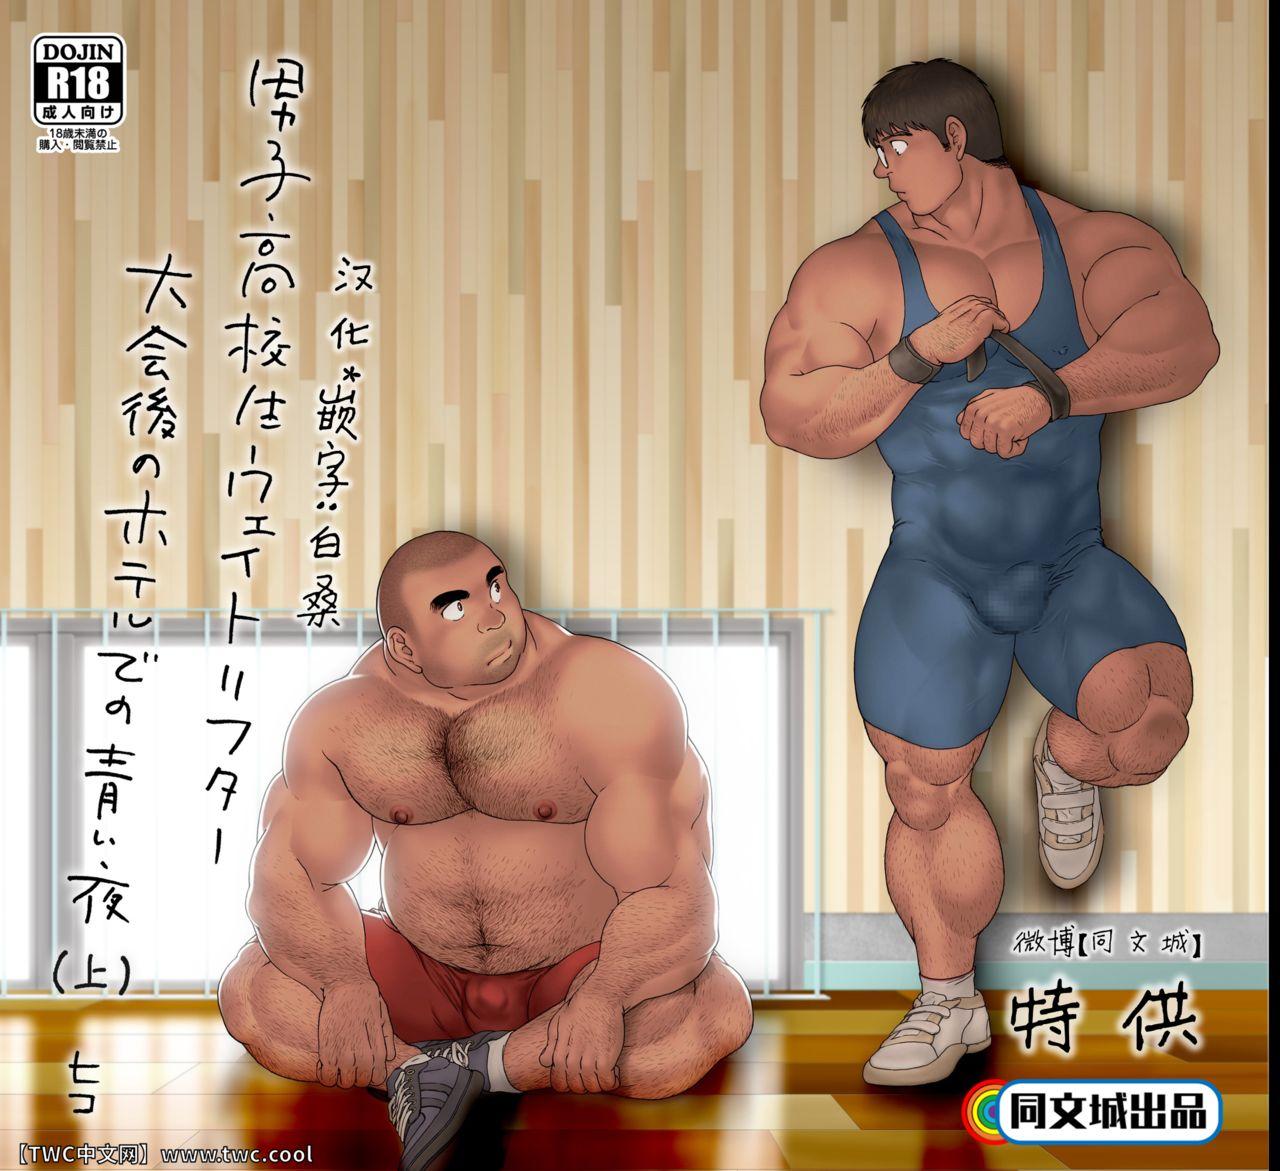 Big Ass Danshi Koukousei Weightlifter Taikai-go no Hotel de no Aoi Yoru Polish - Picture 1